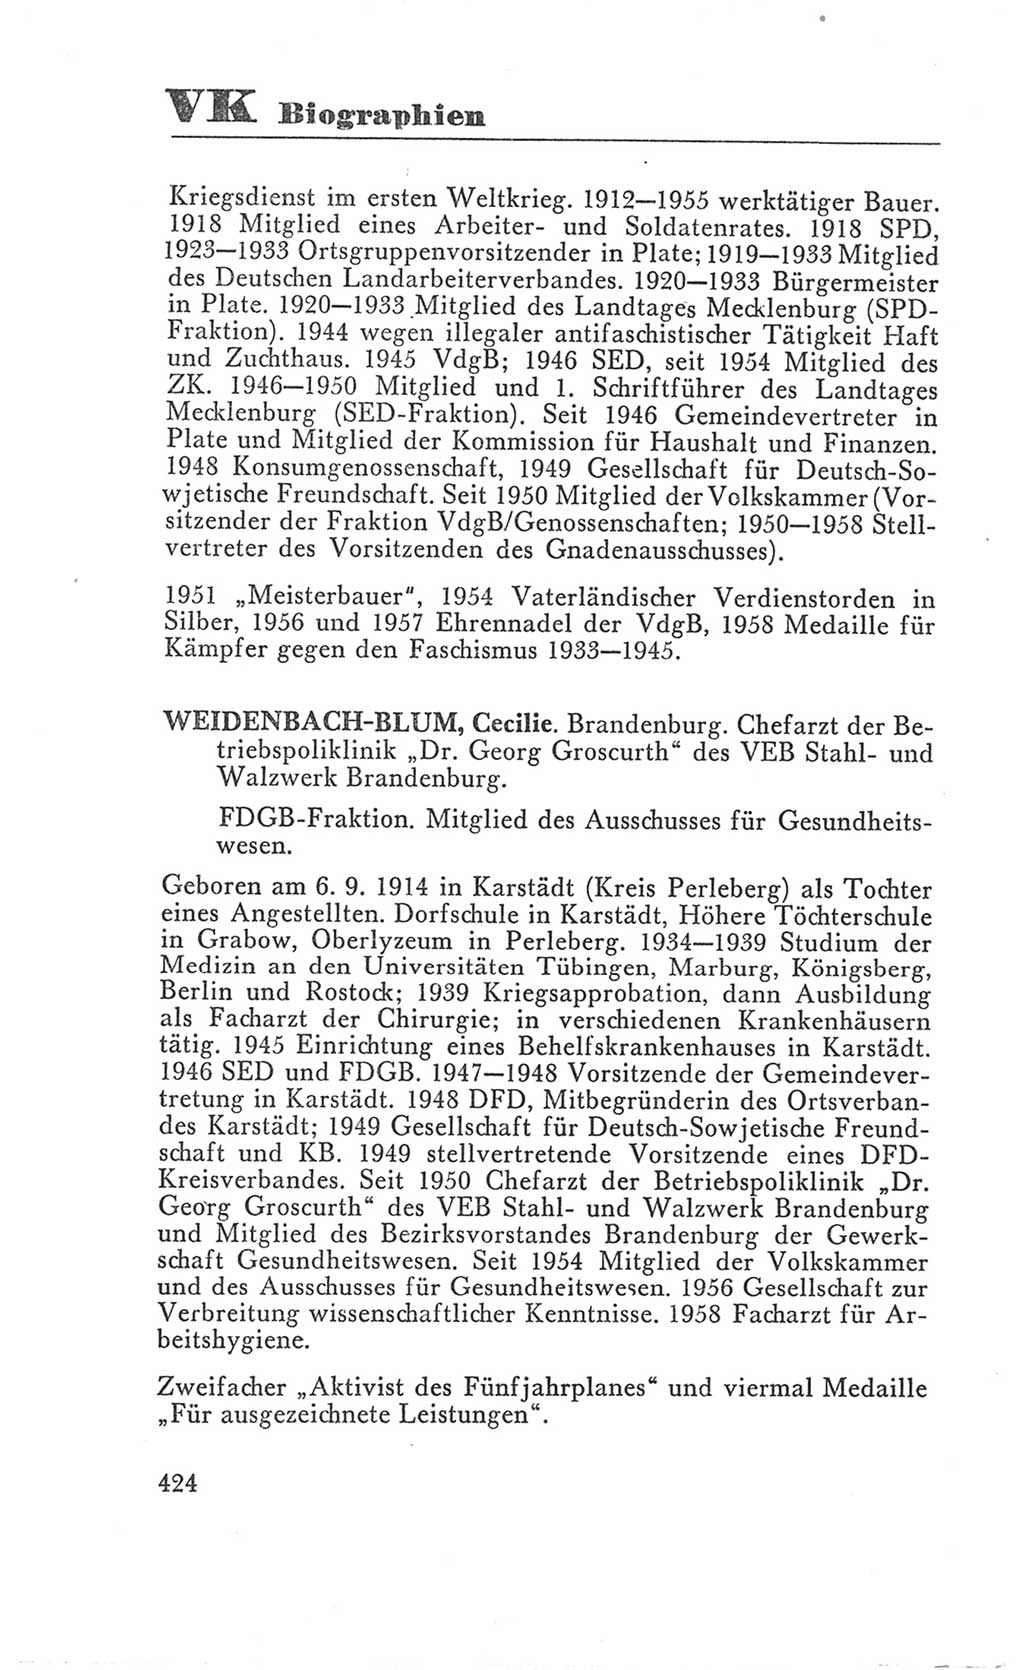 Handbuch der Volkskammer (VK) der Deutschen Demokratischen Republik (DDR), 3. Wahlperiode 1958-1963, Seite 424 (Hdb. VK. DDR 3. WP. 1958-1963, S. 424)